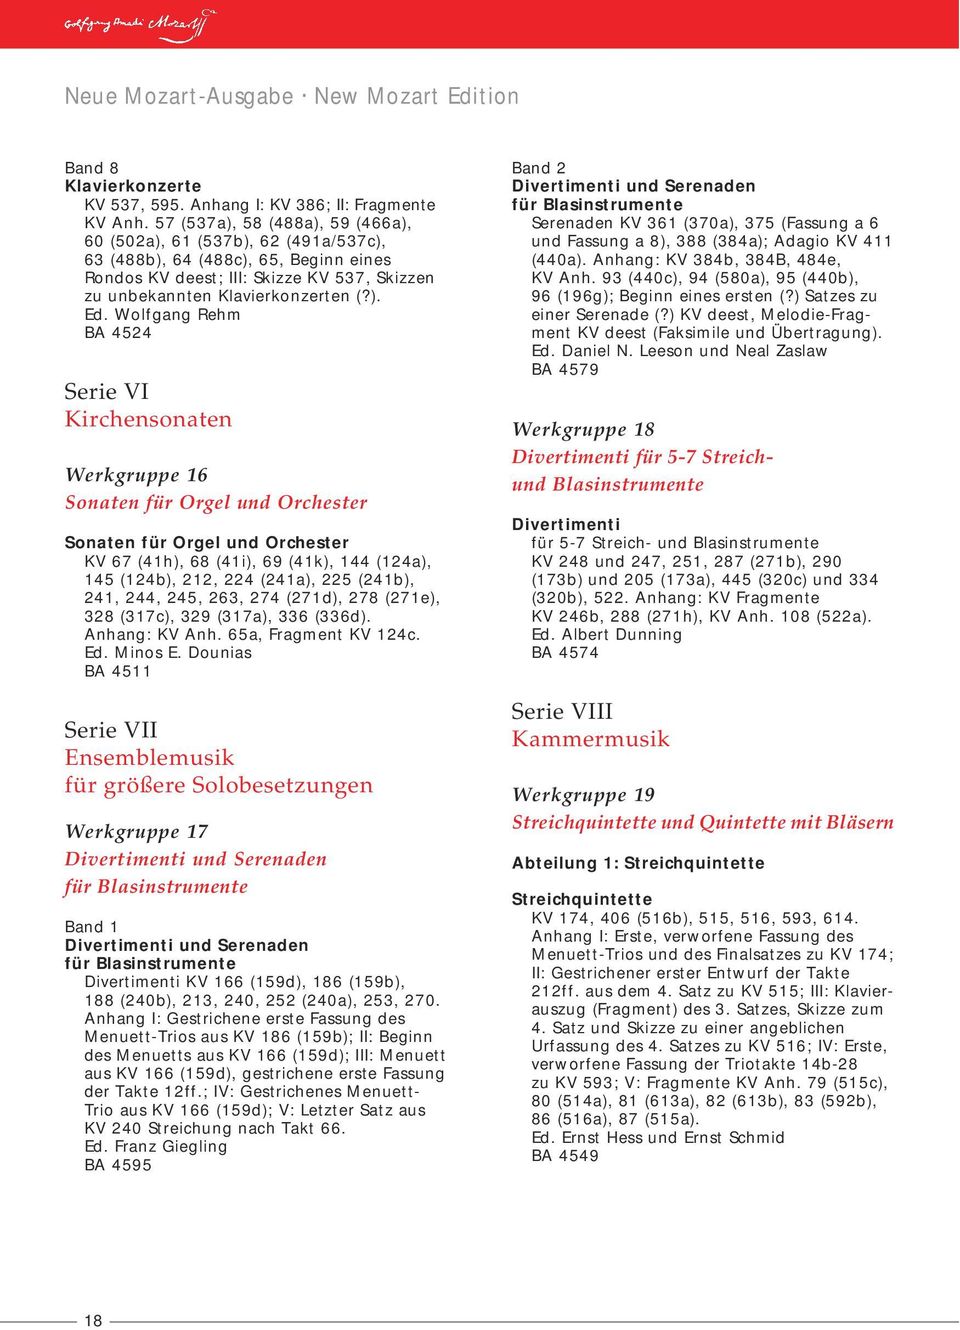 Wolfgang Rehm BA 4524 Serie VI Kirchensonaten Werkgruppe 16 Sonaten für Orgel und Orchester Sonaten für Orgel und Orchester KV 67 (41h), 68 (41i), 69 (41k), 144 (124a), 145 (124b), 212, 224 (241a),